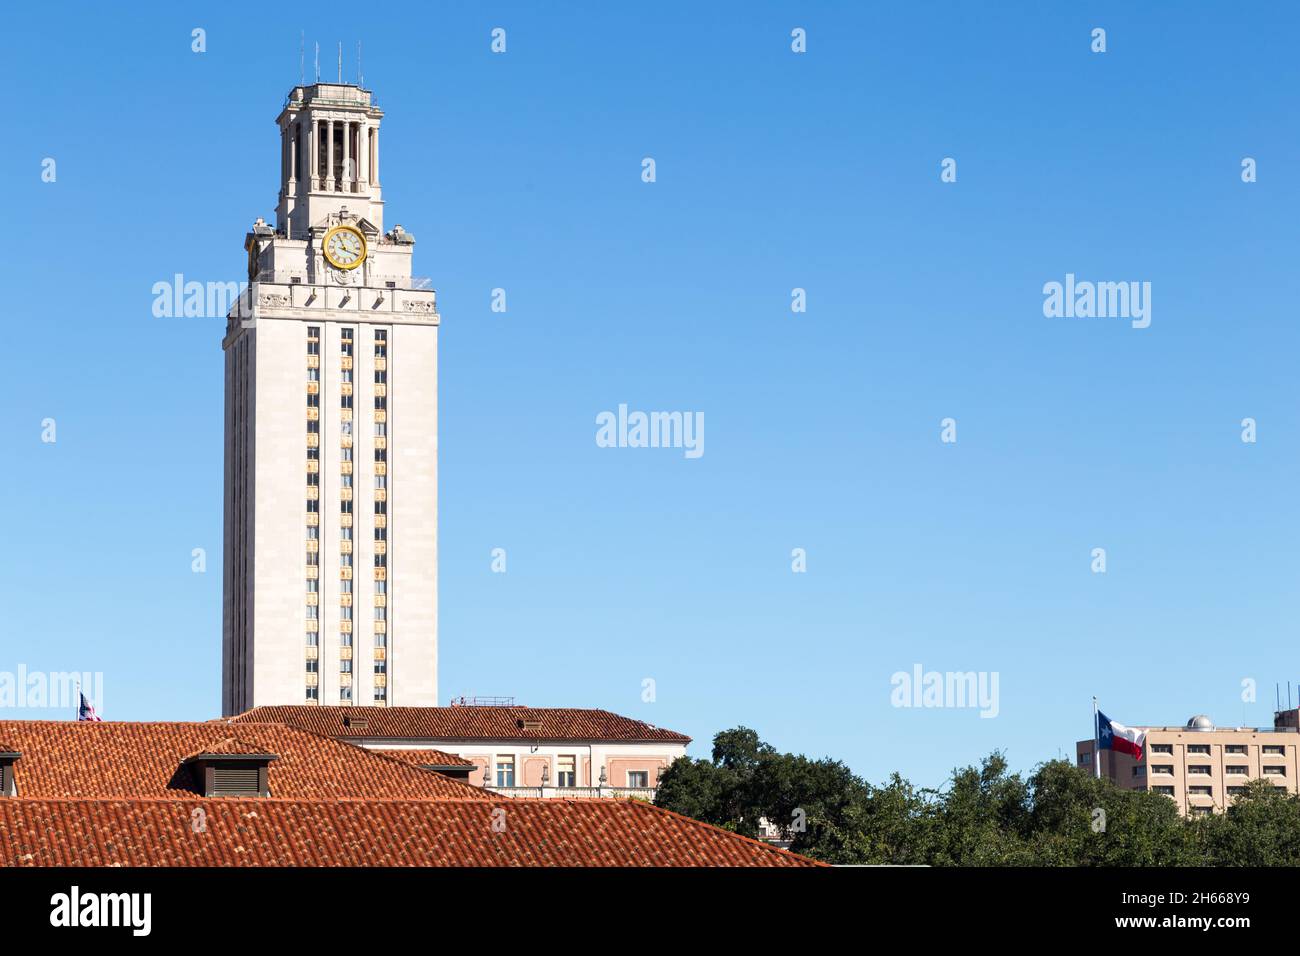 University of Texas Tower, Austin TX Stock Photo